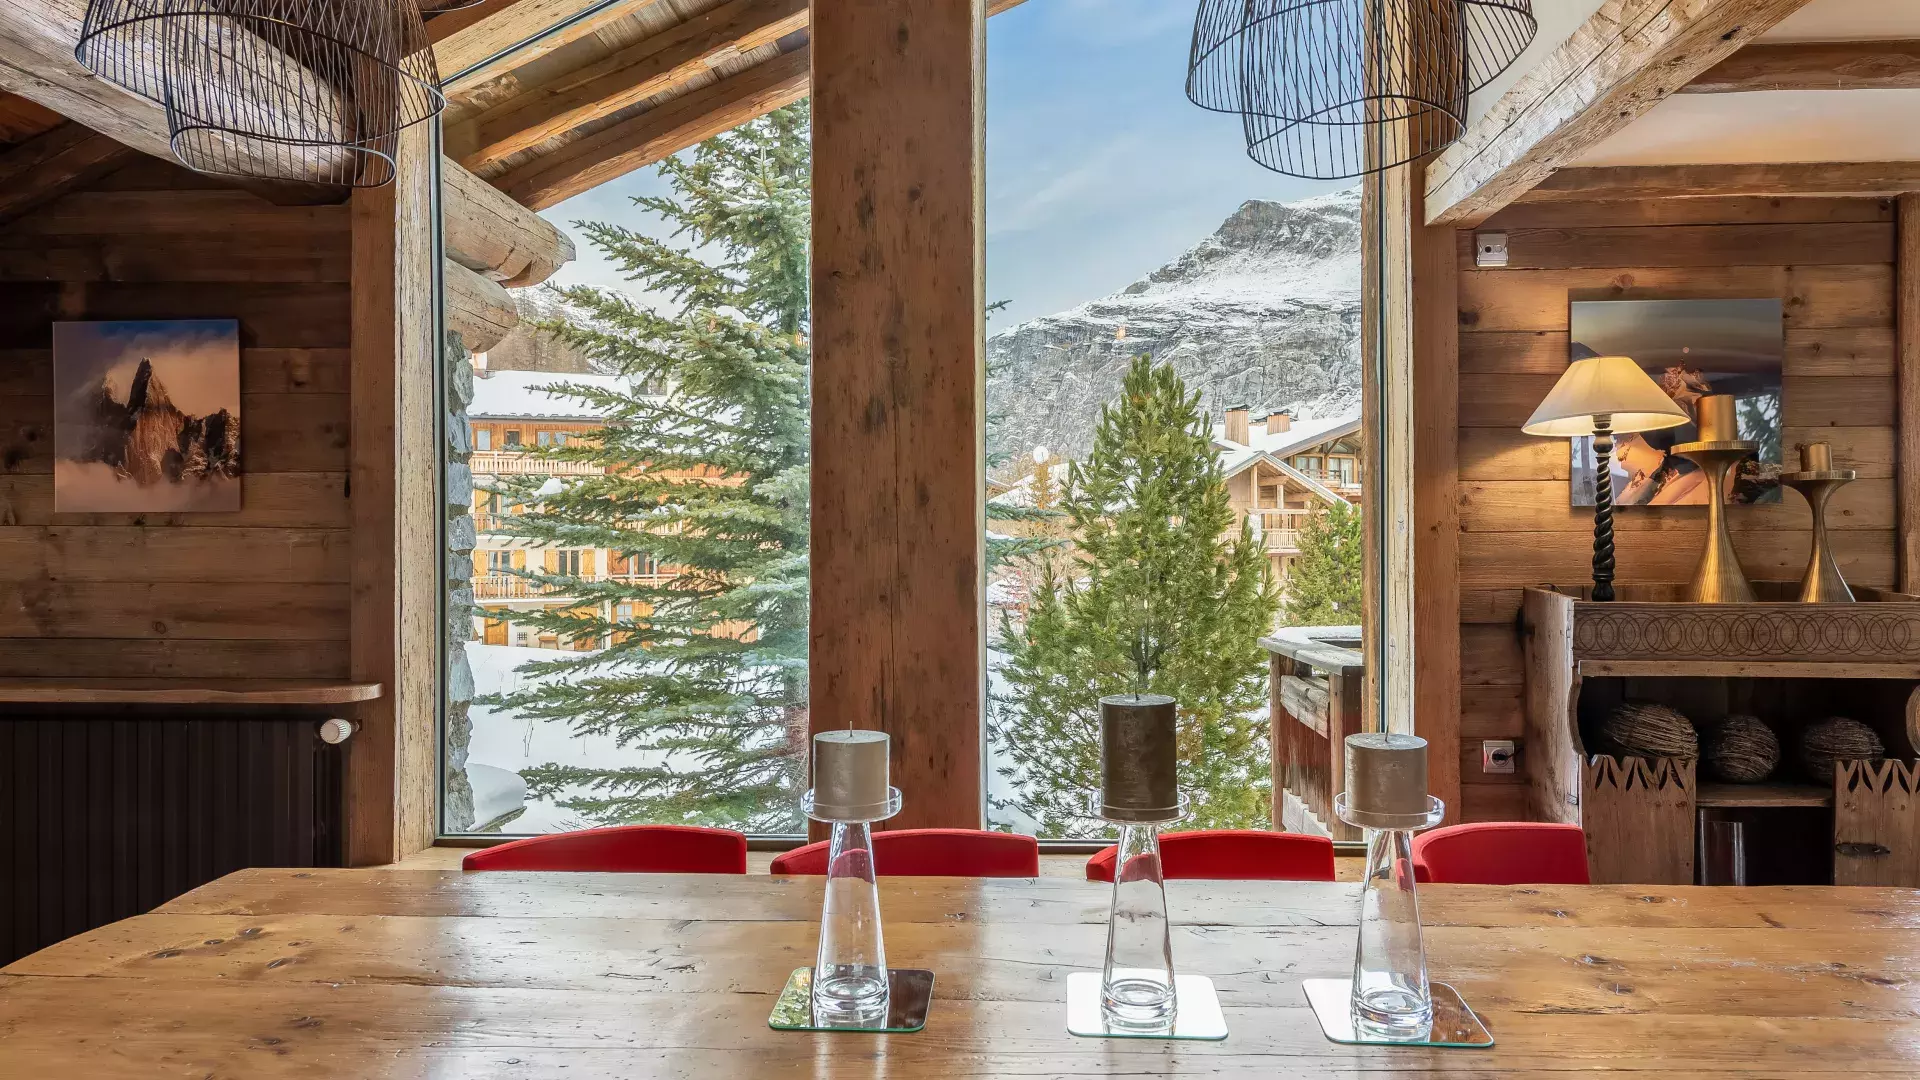 Chalet Marie - Location chalets Covarel - Val d'Isère Alpes - France – Salle à manger